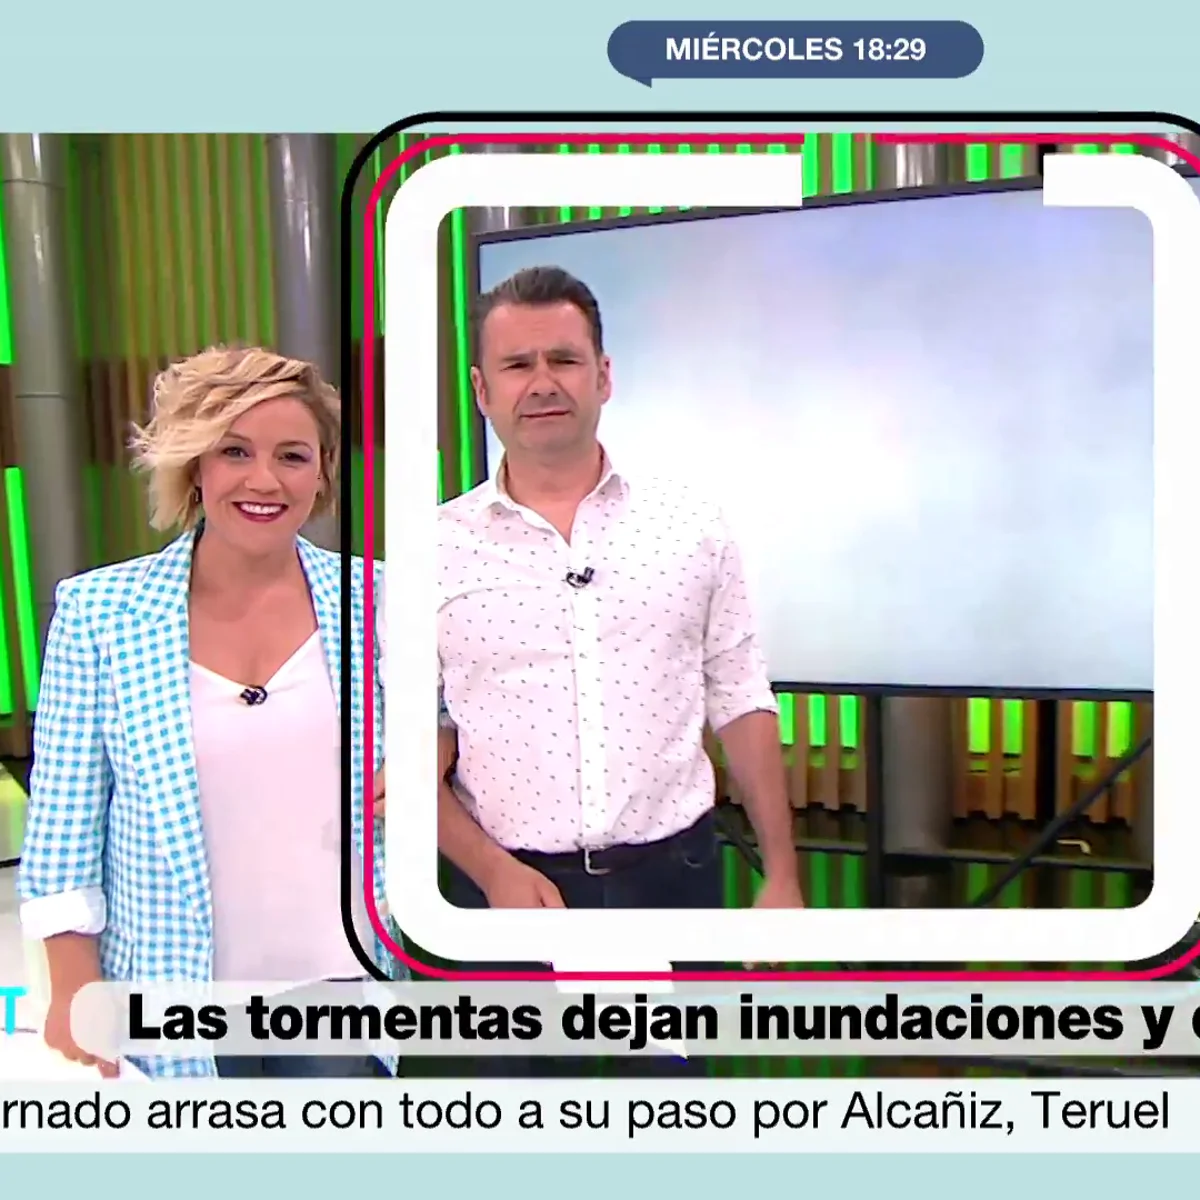 Queda inaugurado el confesionario de Iñaki López: así ha sido el divertido  momento del presentador con el micrófono